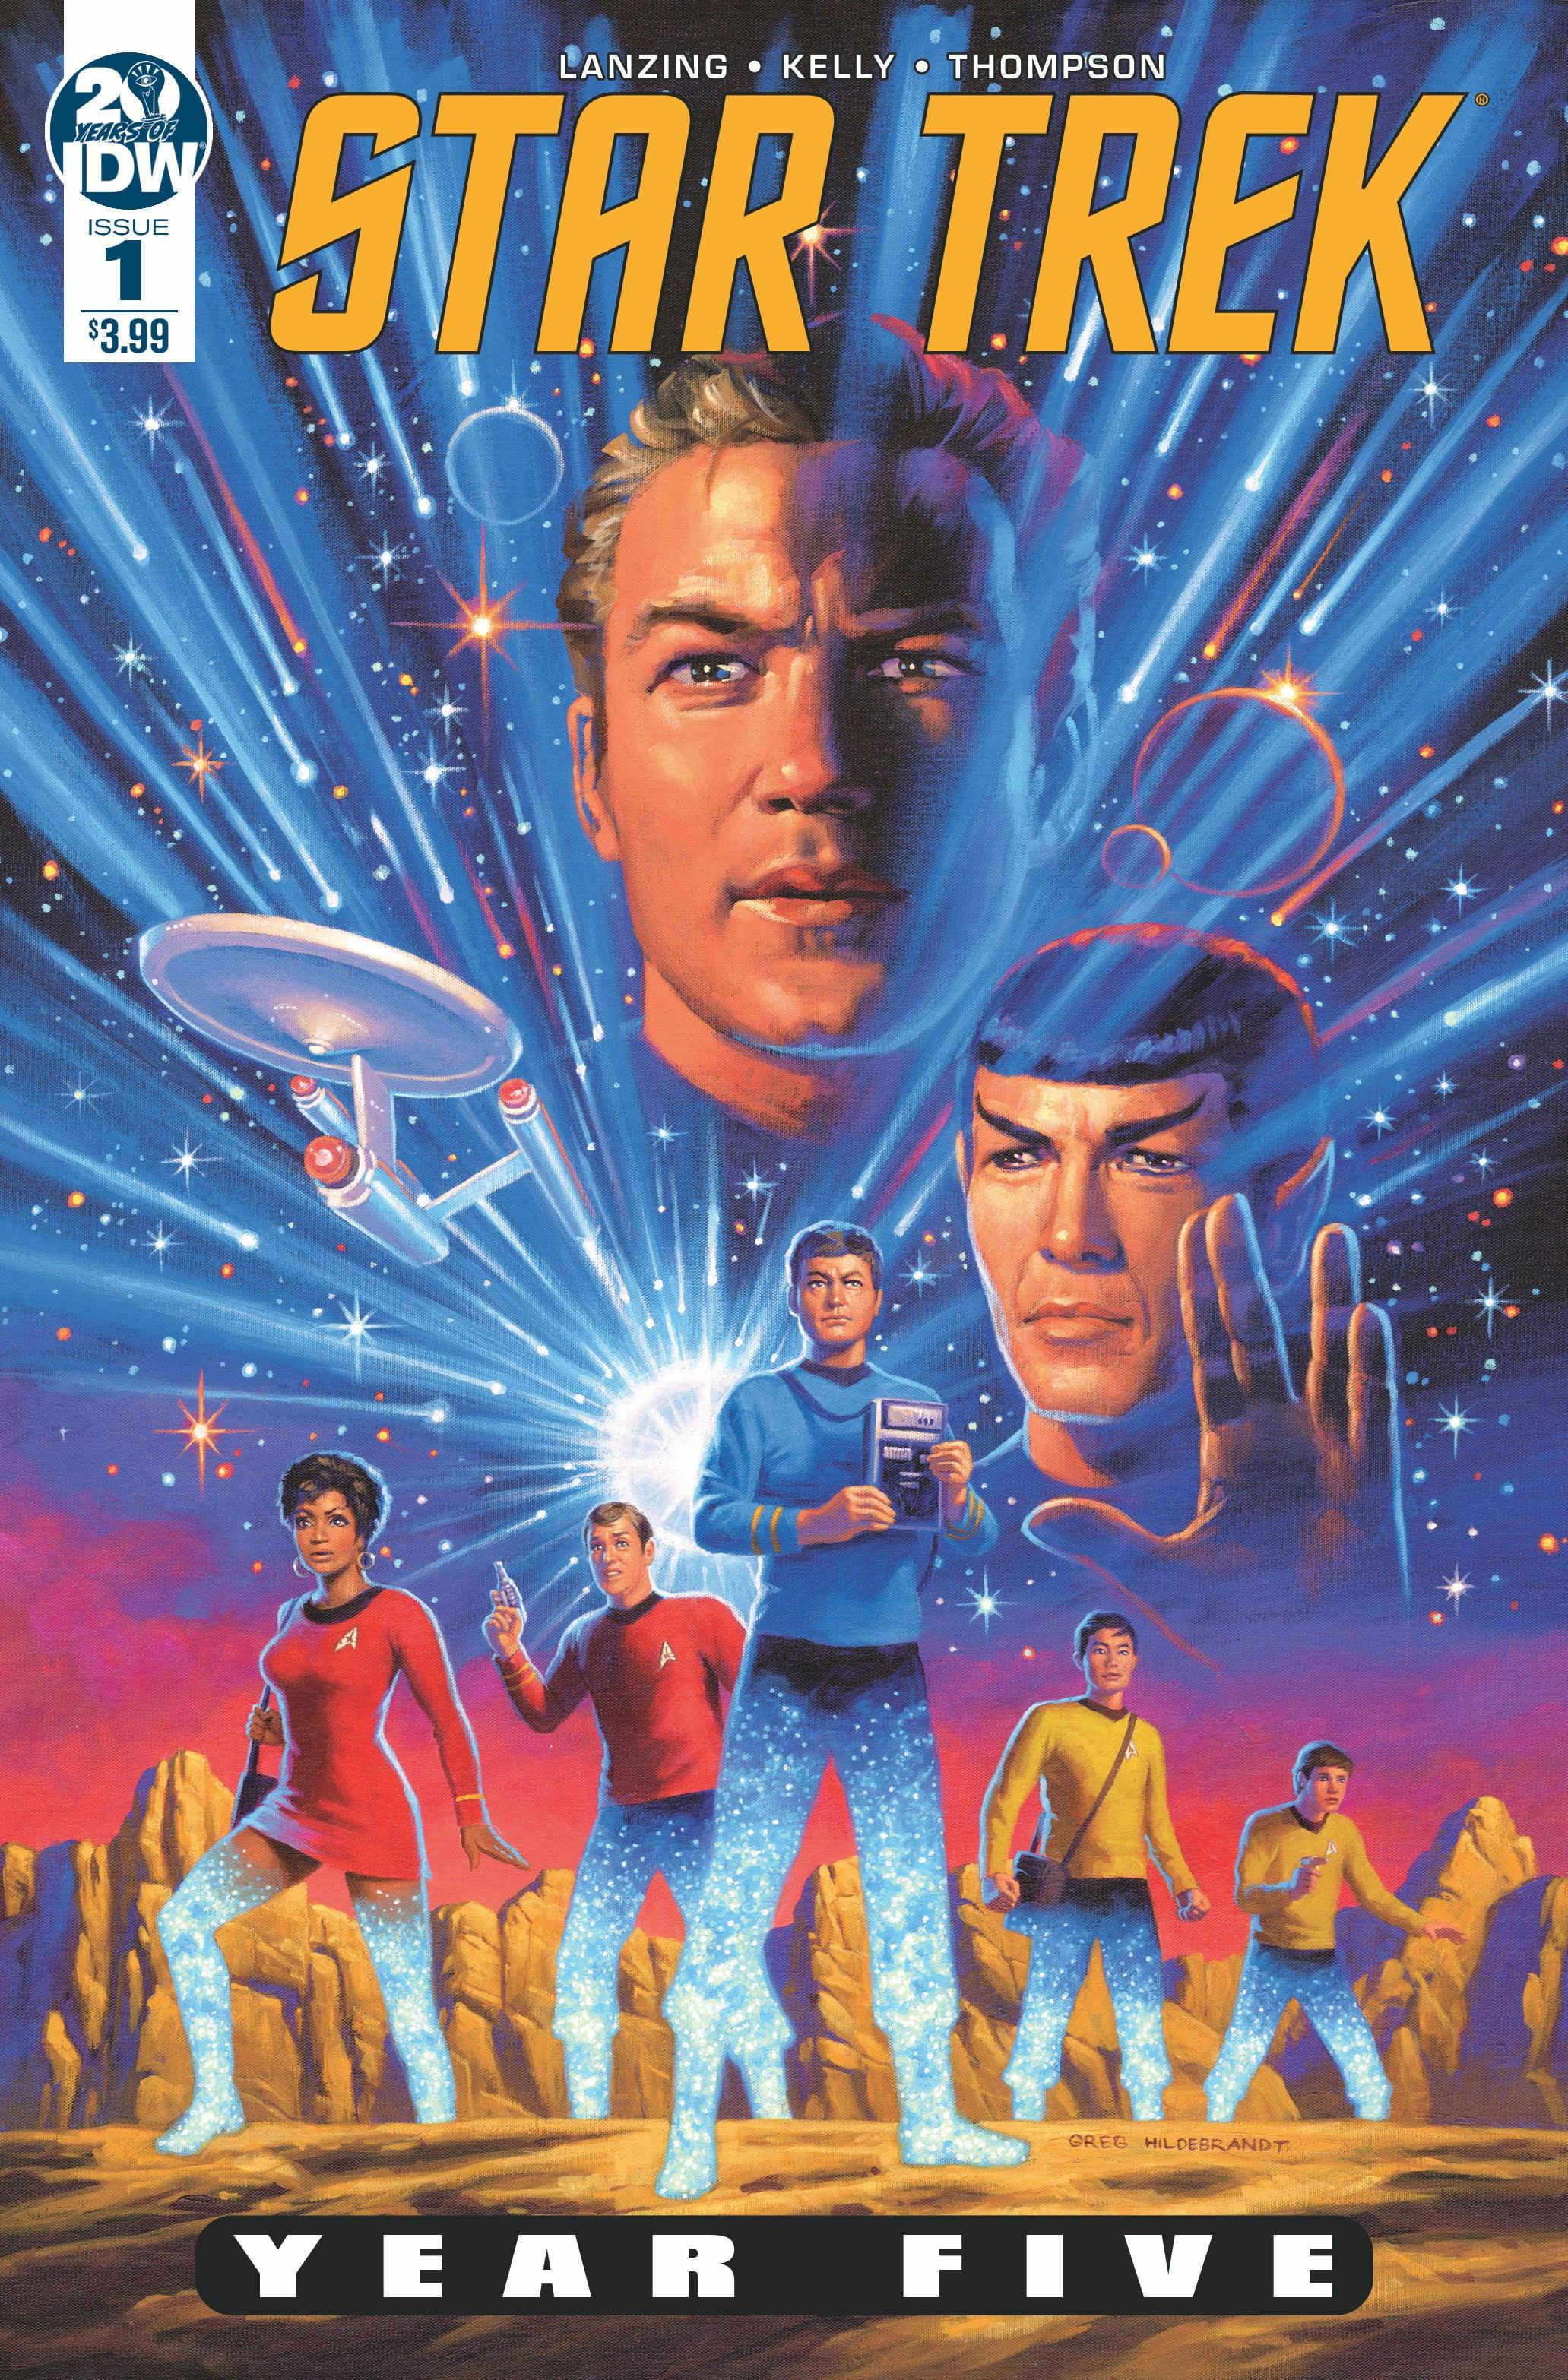 Star Trek: Year Five